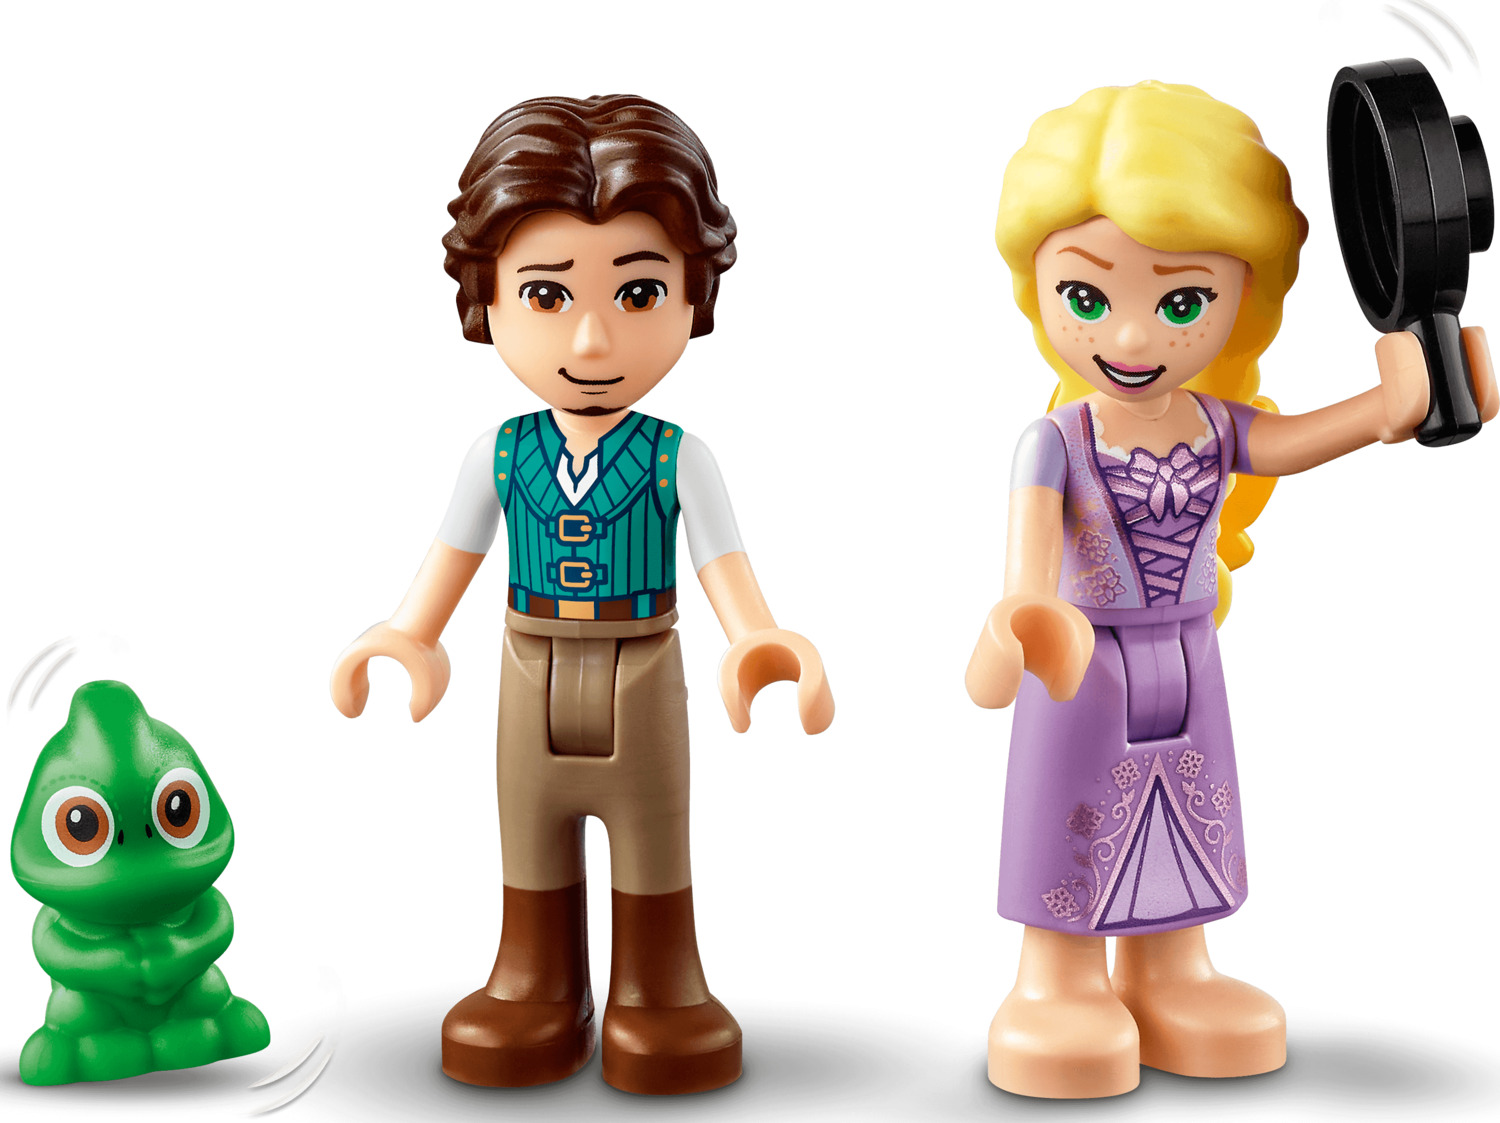 LEGO® Disney: Rapunzel's Tower - Kiddlestix Toys